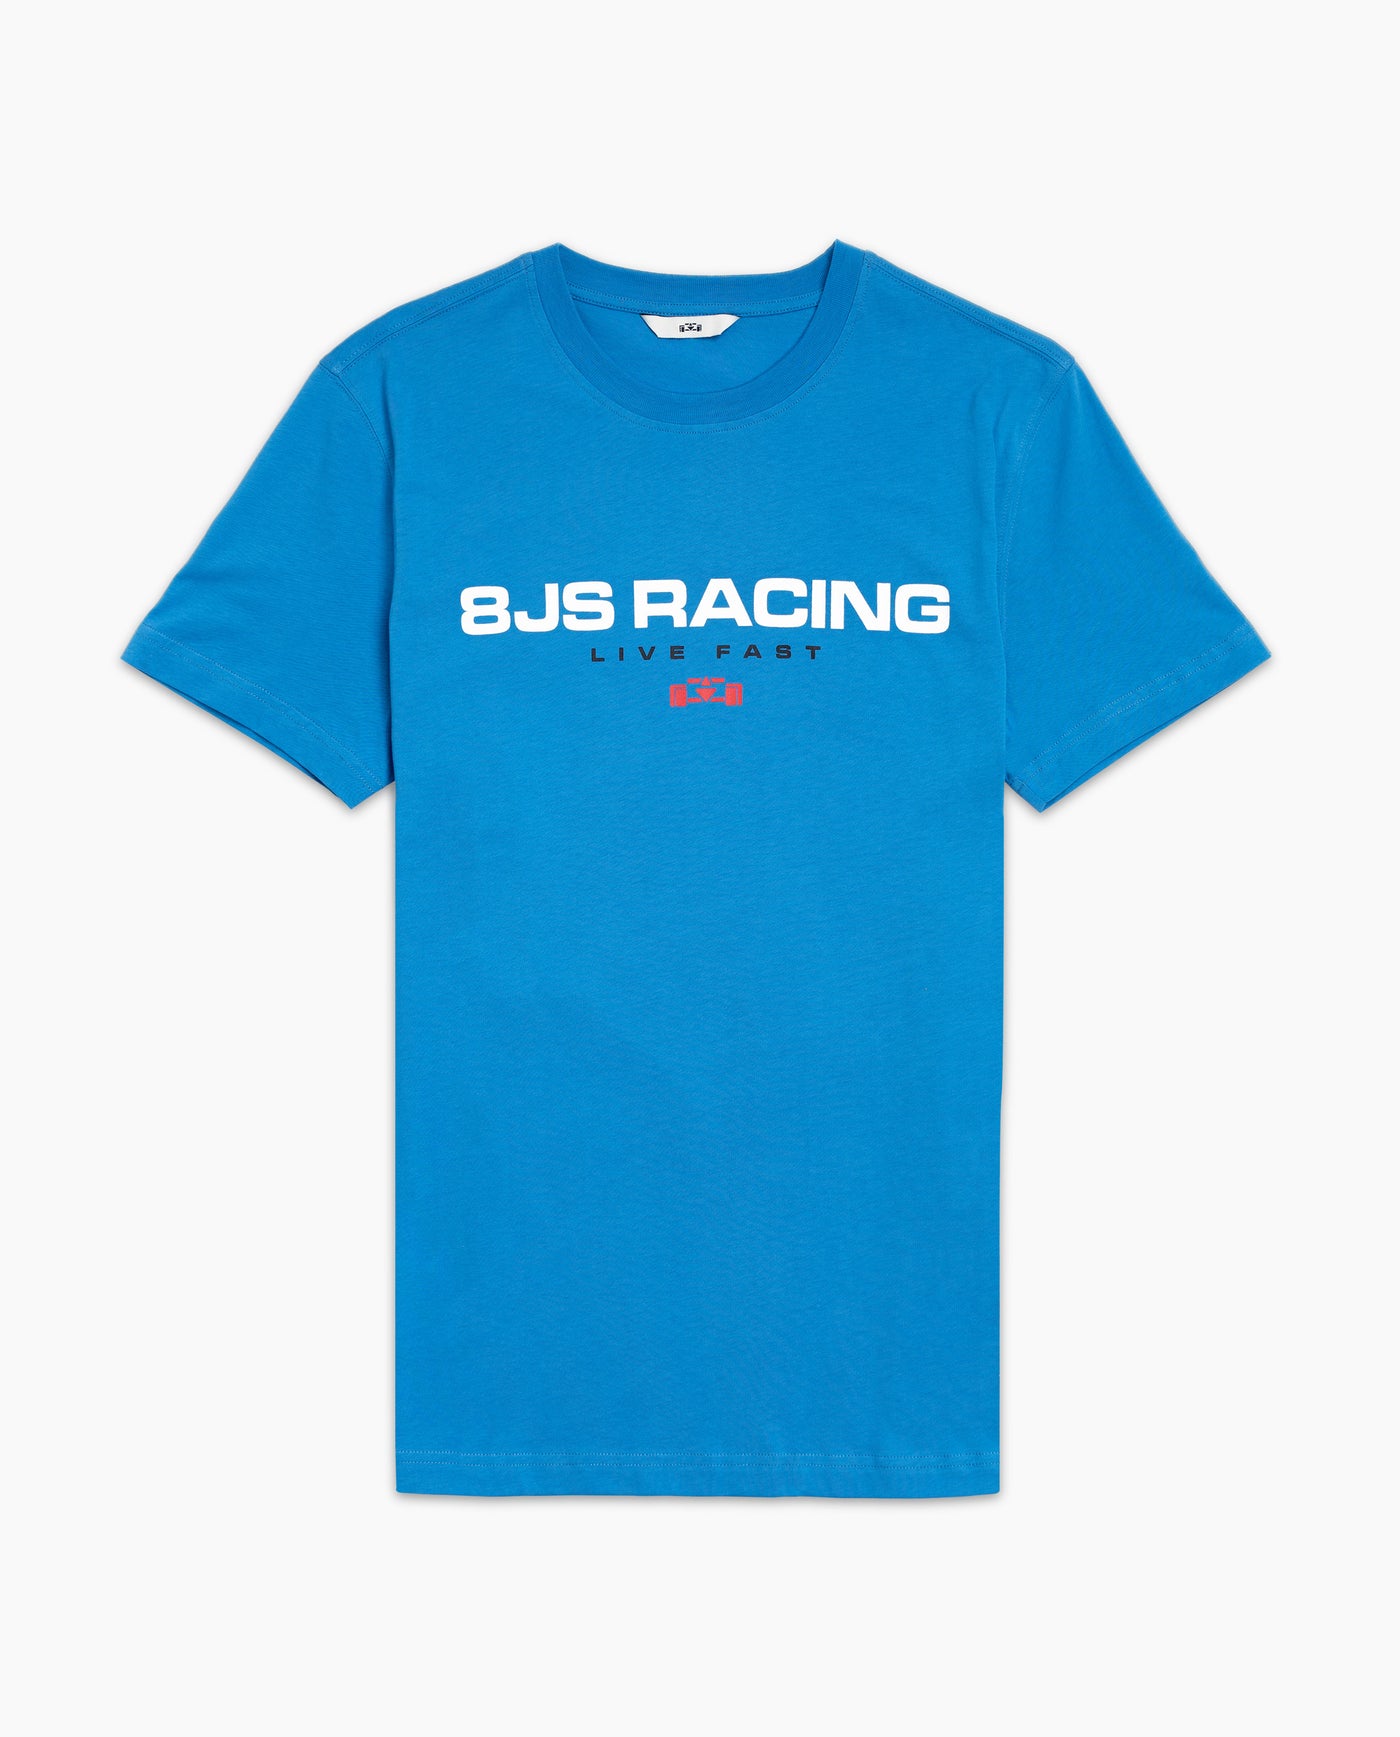 8JS Racing T-Shirt - 8JS